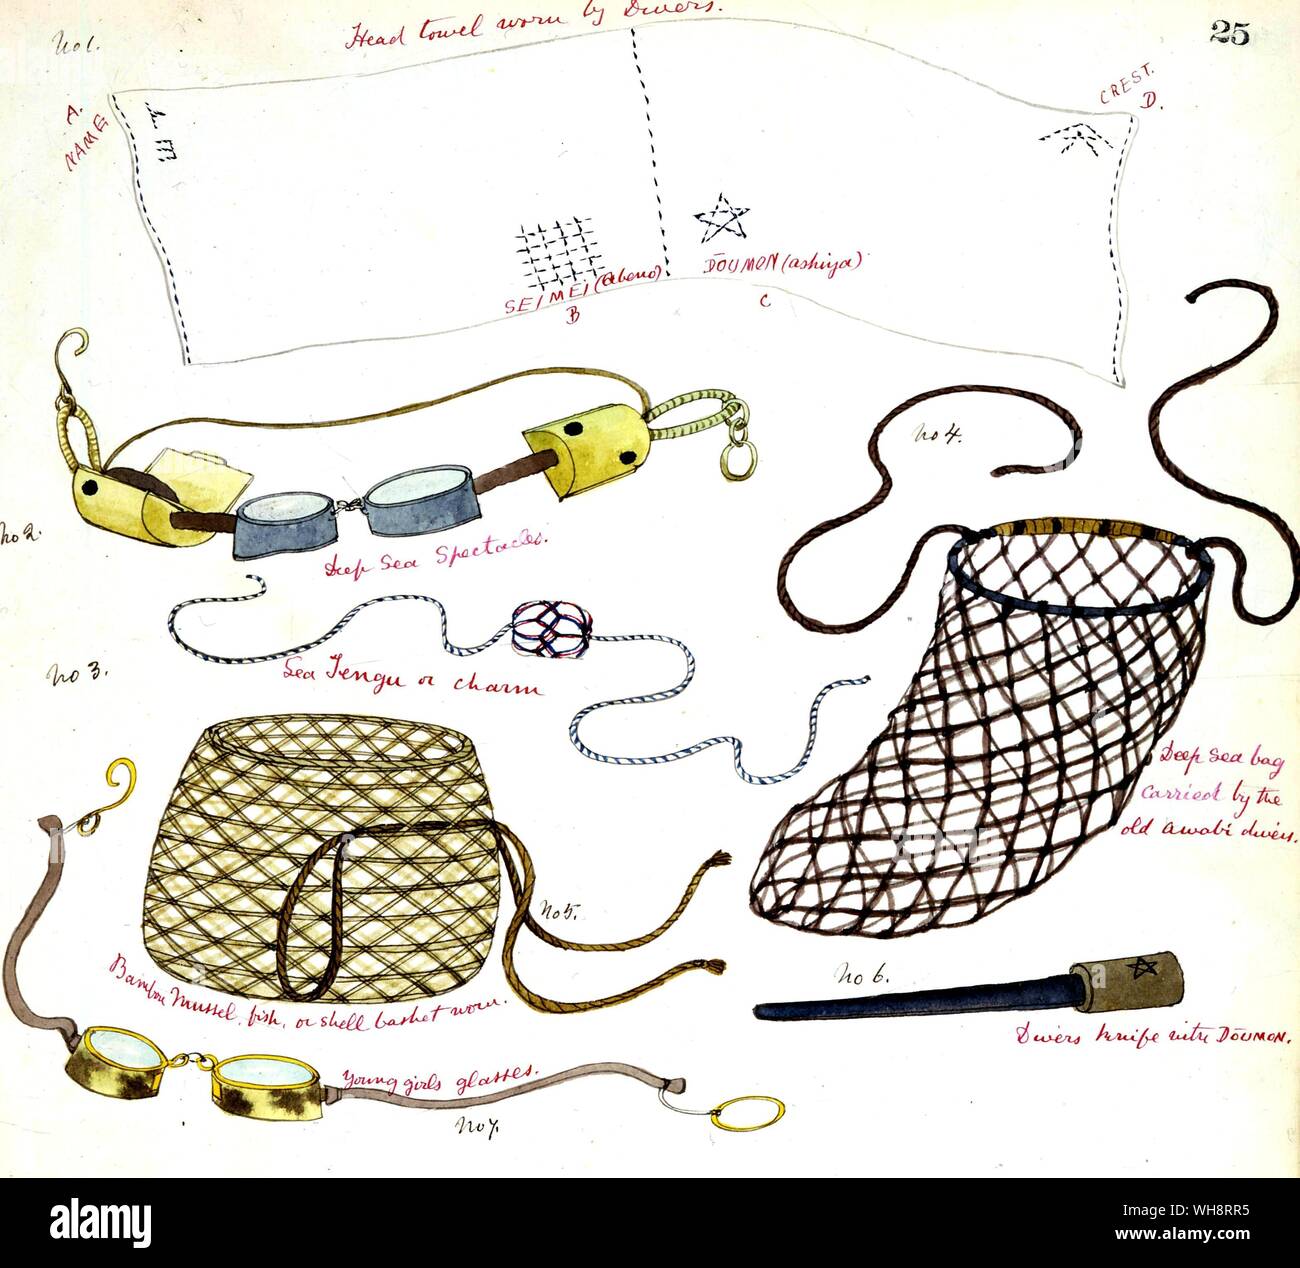 Ausrüstung, die durch die Perlentaucher von Toshi verwendet, einschließlich Netze Schutzbrille, Leiter Handtuch, Messer und ein Meer tengu (Charme). Stockfoto